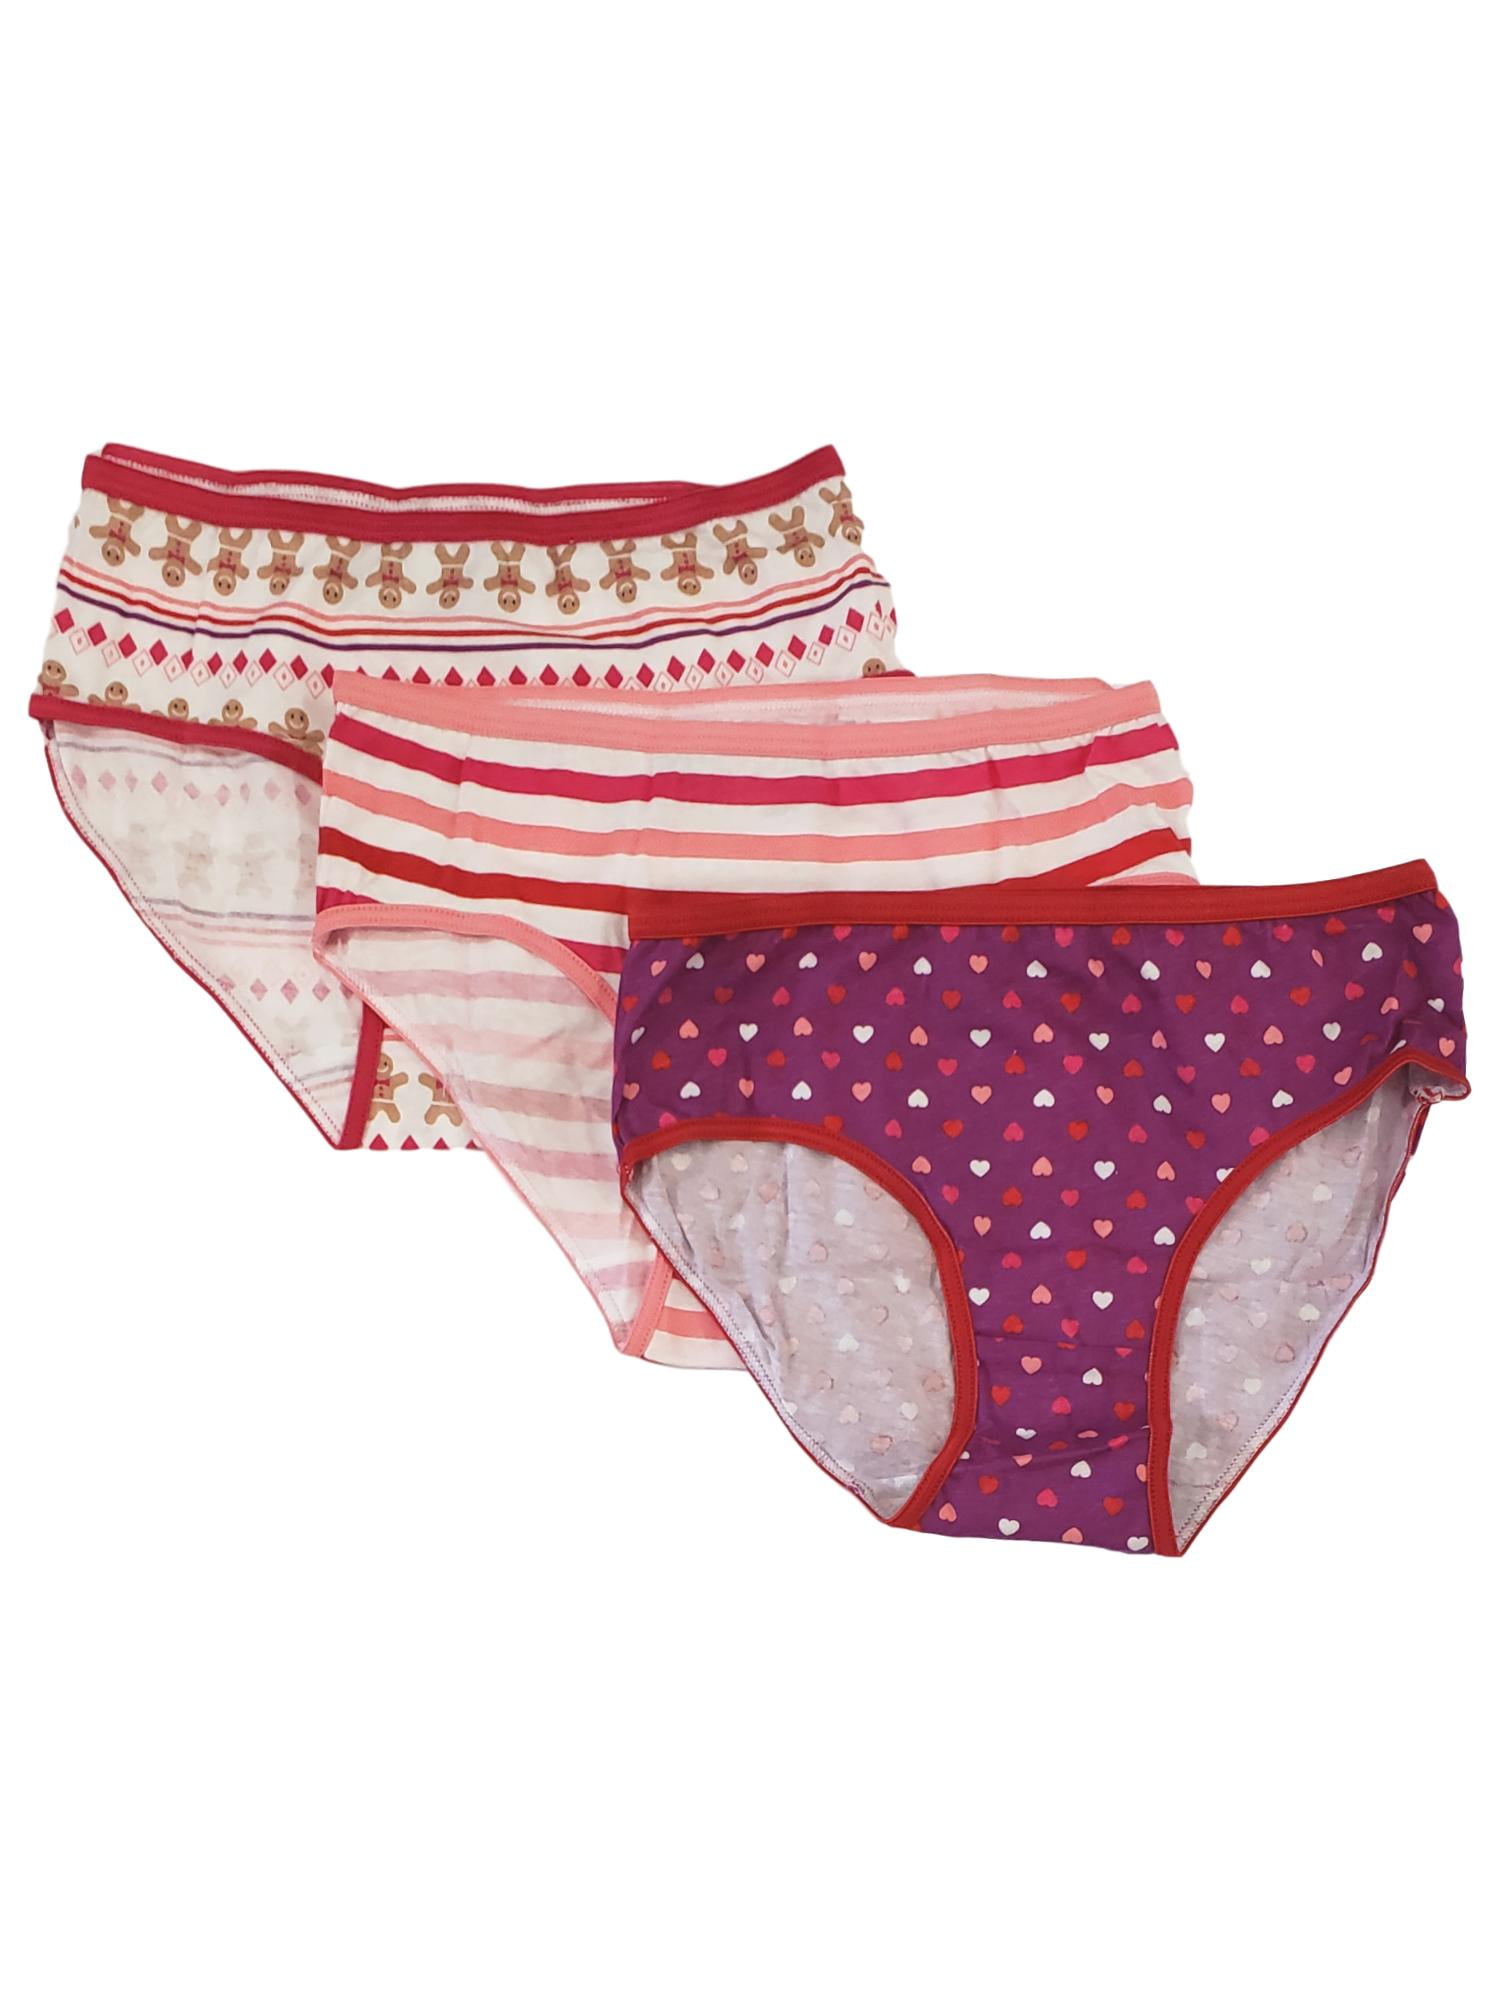 Saks Fifth Avenue Girls Clothing Underwear Briefs Little Girls & Girls 3-Pack Popsicle Brief Set 